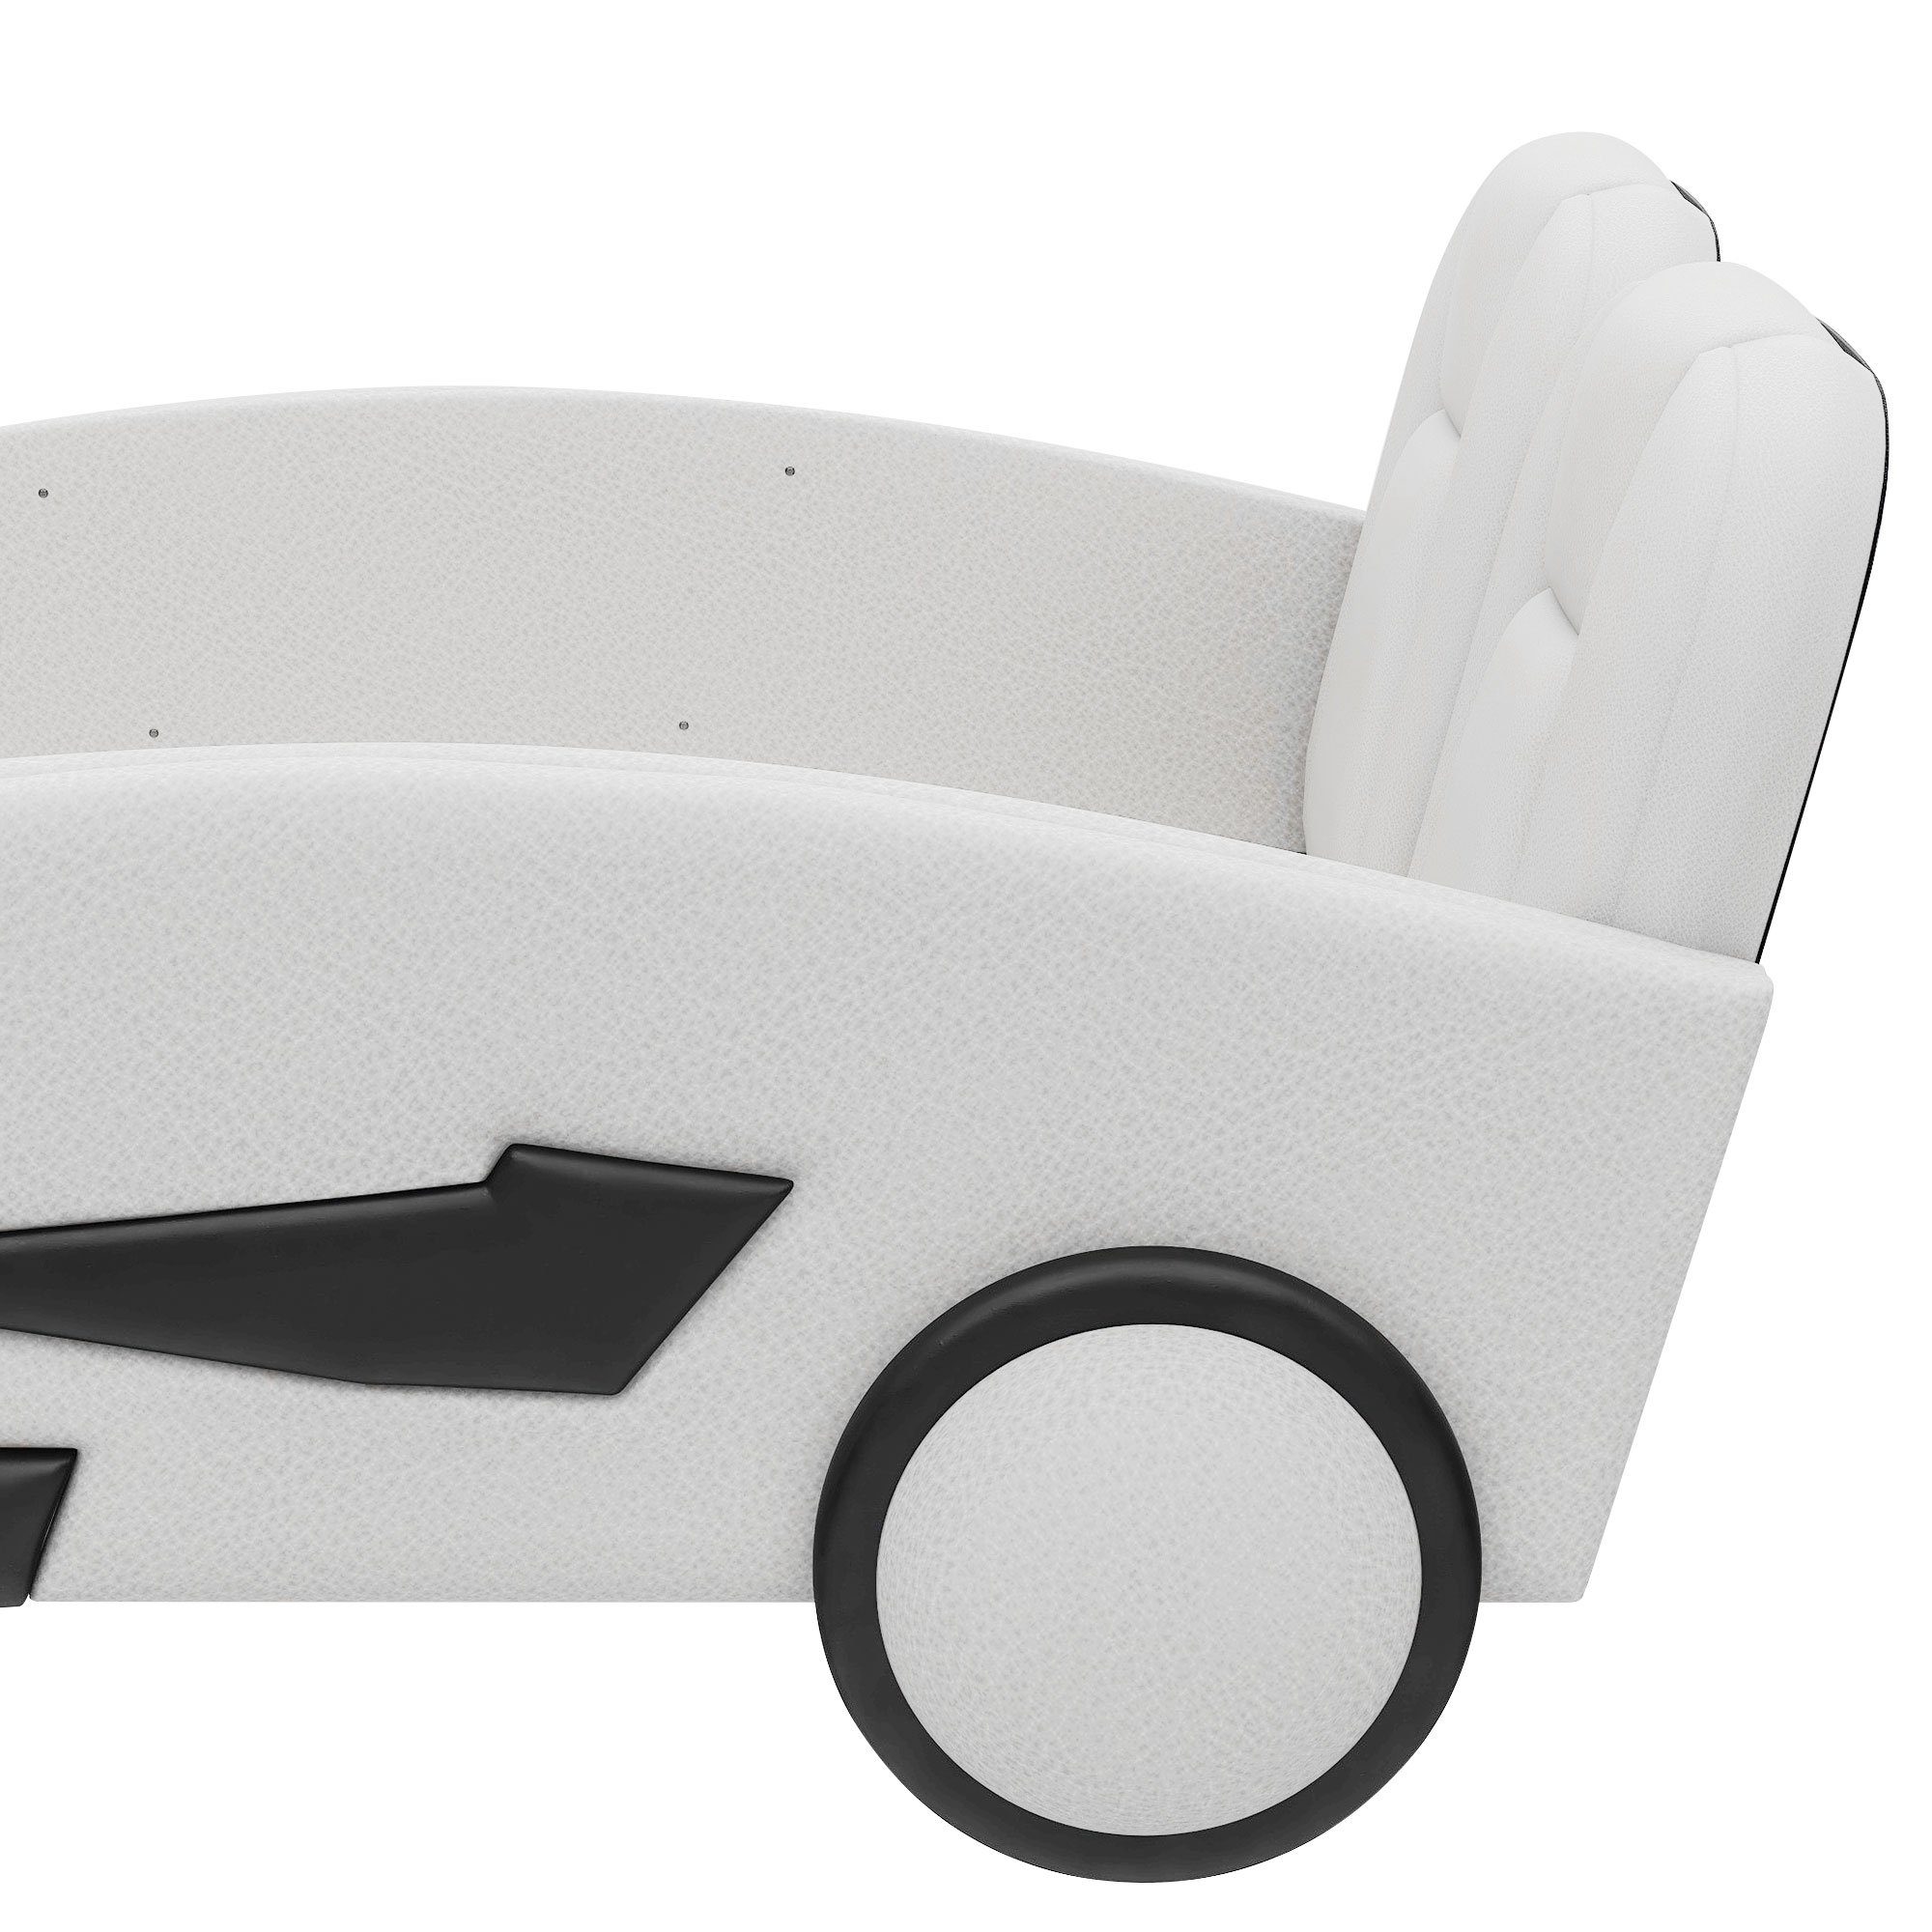 Ulife Autobett Kinderbett Spielbett Flachbett Weiß Kunstleder mit Rausfallschutz, 90×200cm